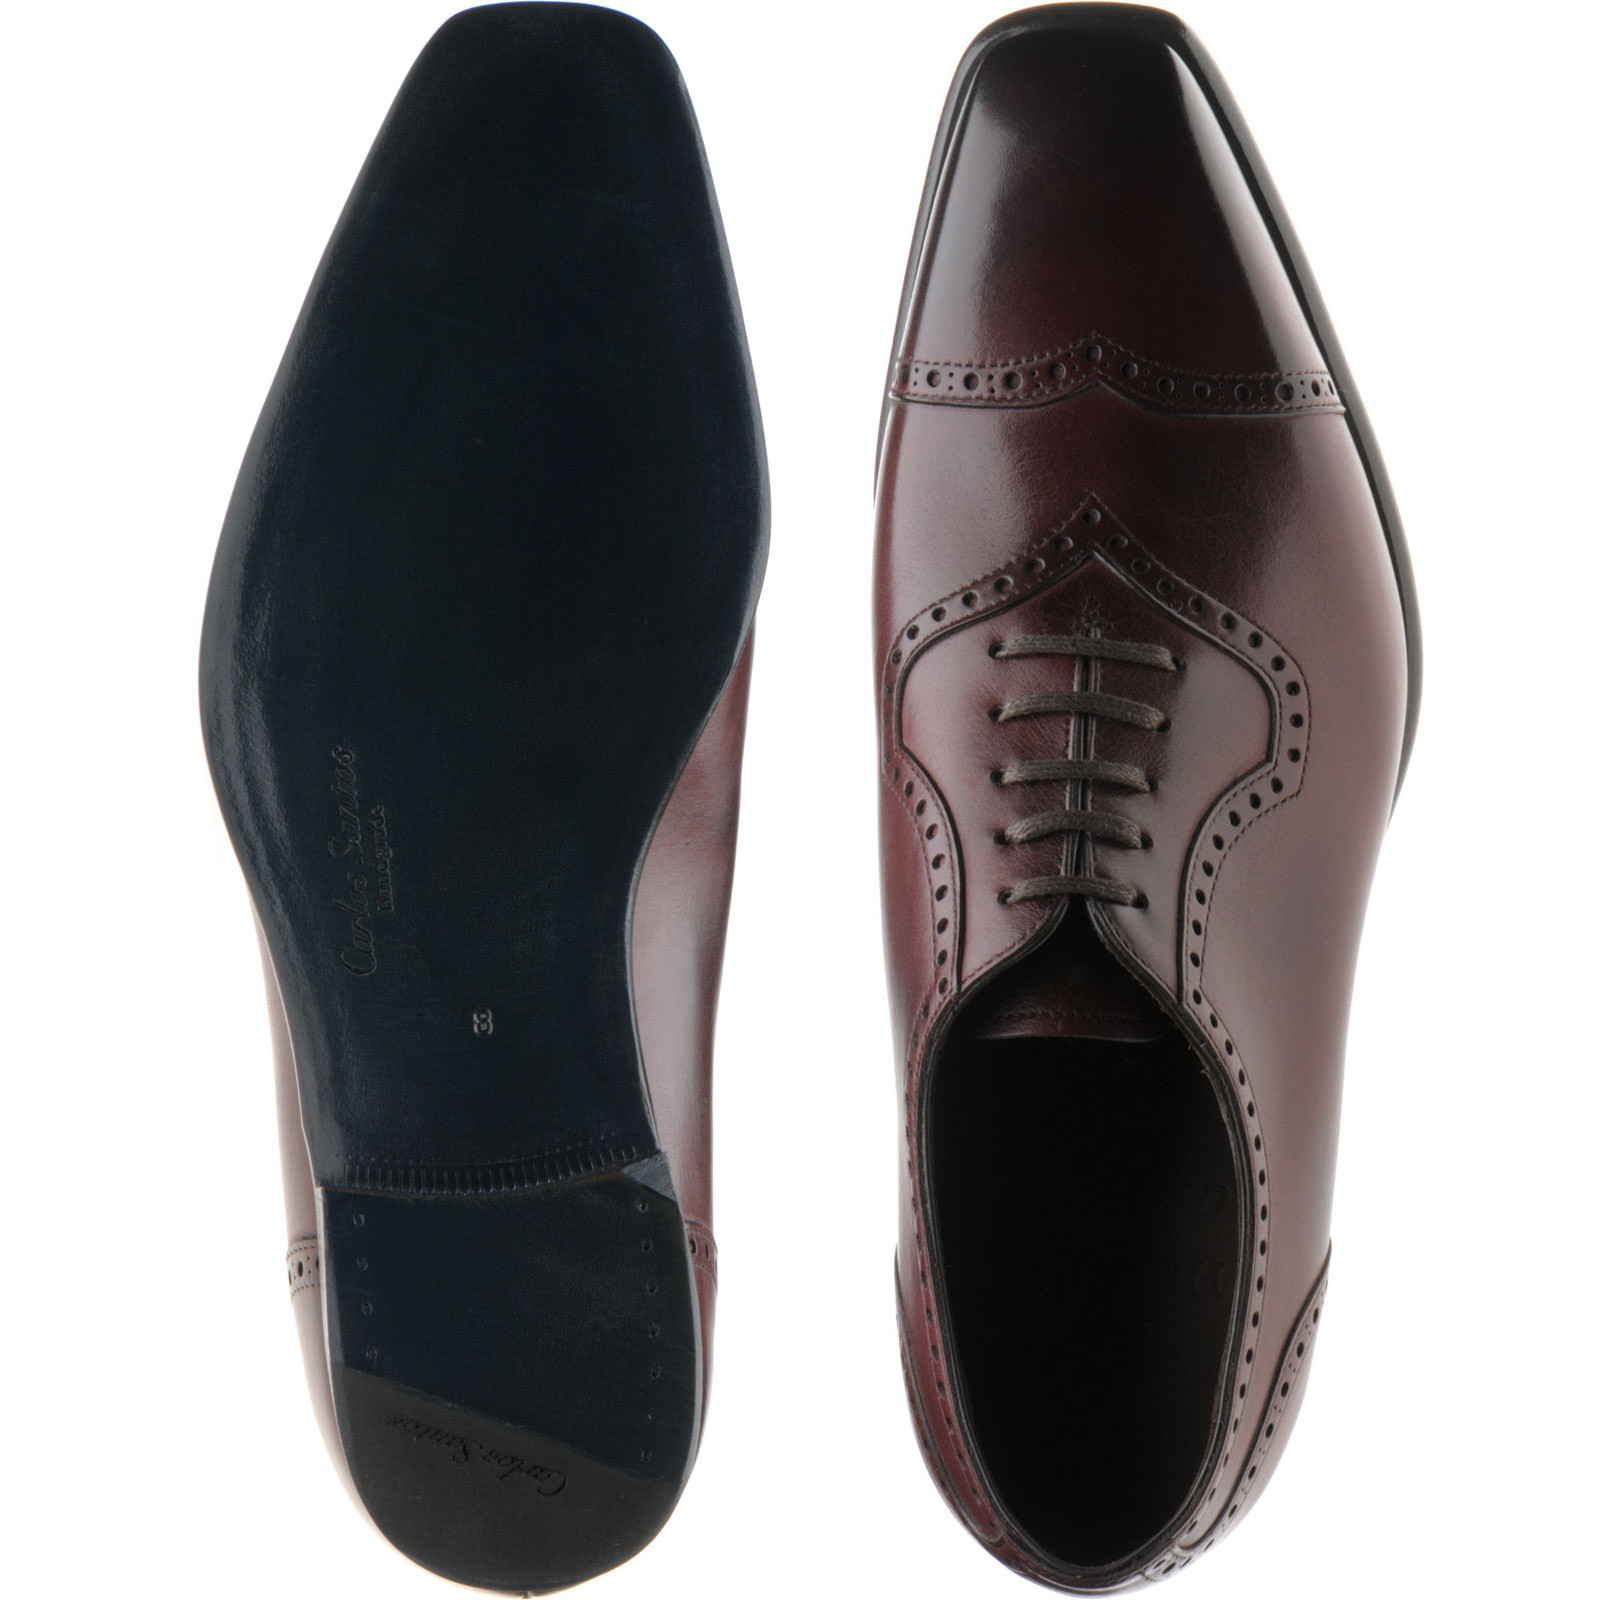 Herring shoes | Herring Sale | Millbank in Burgundy Calf at Herring Shoes